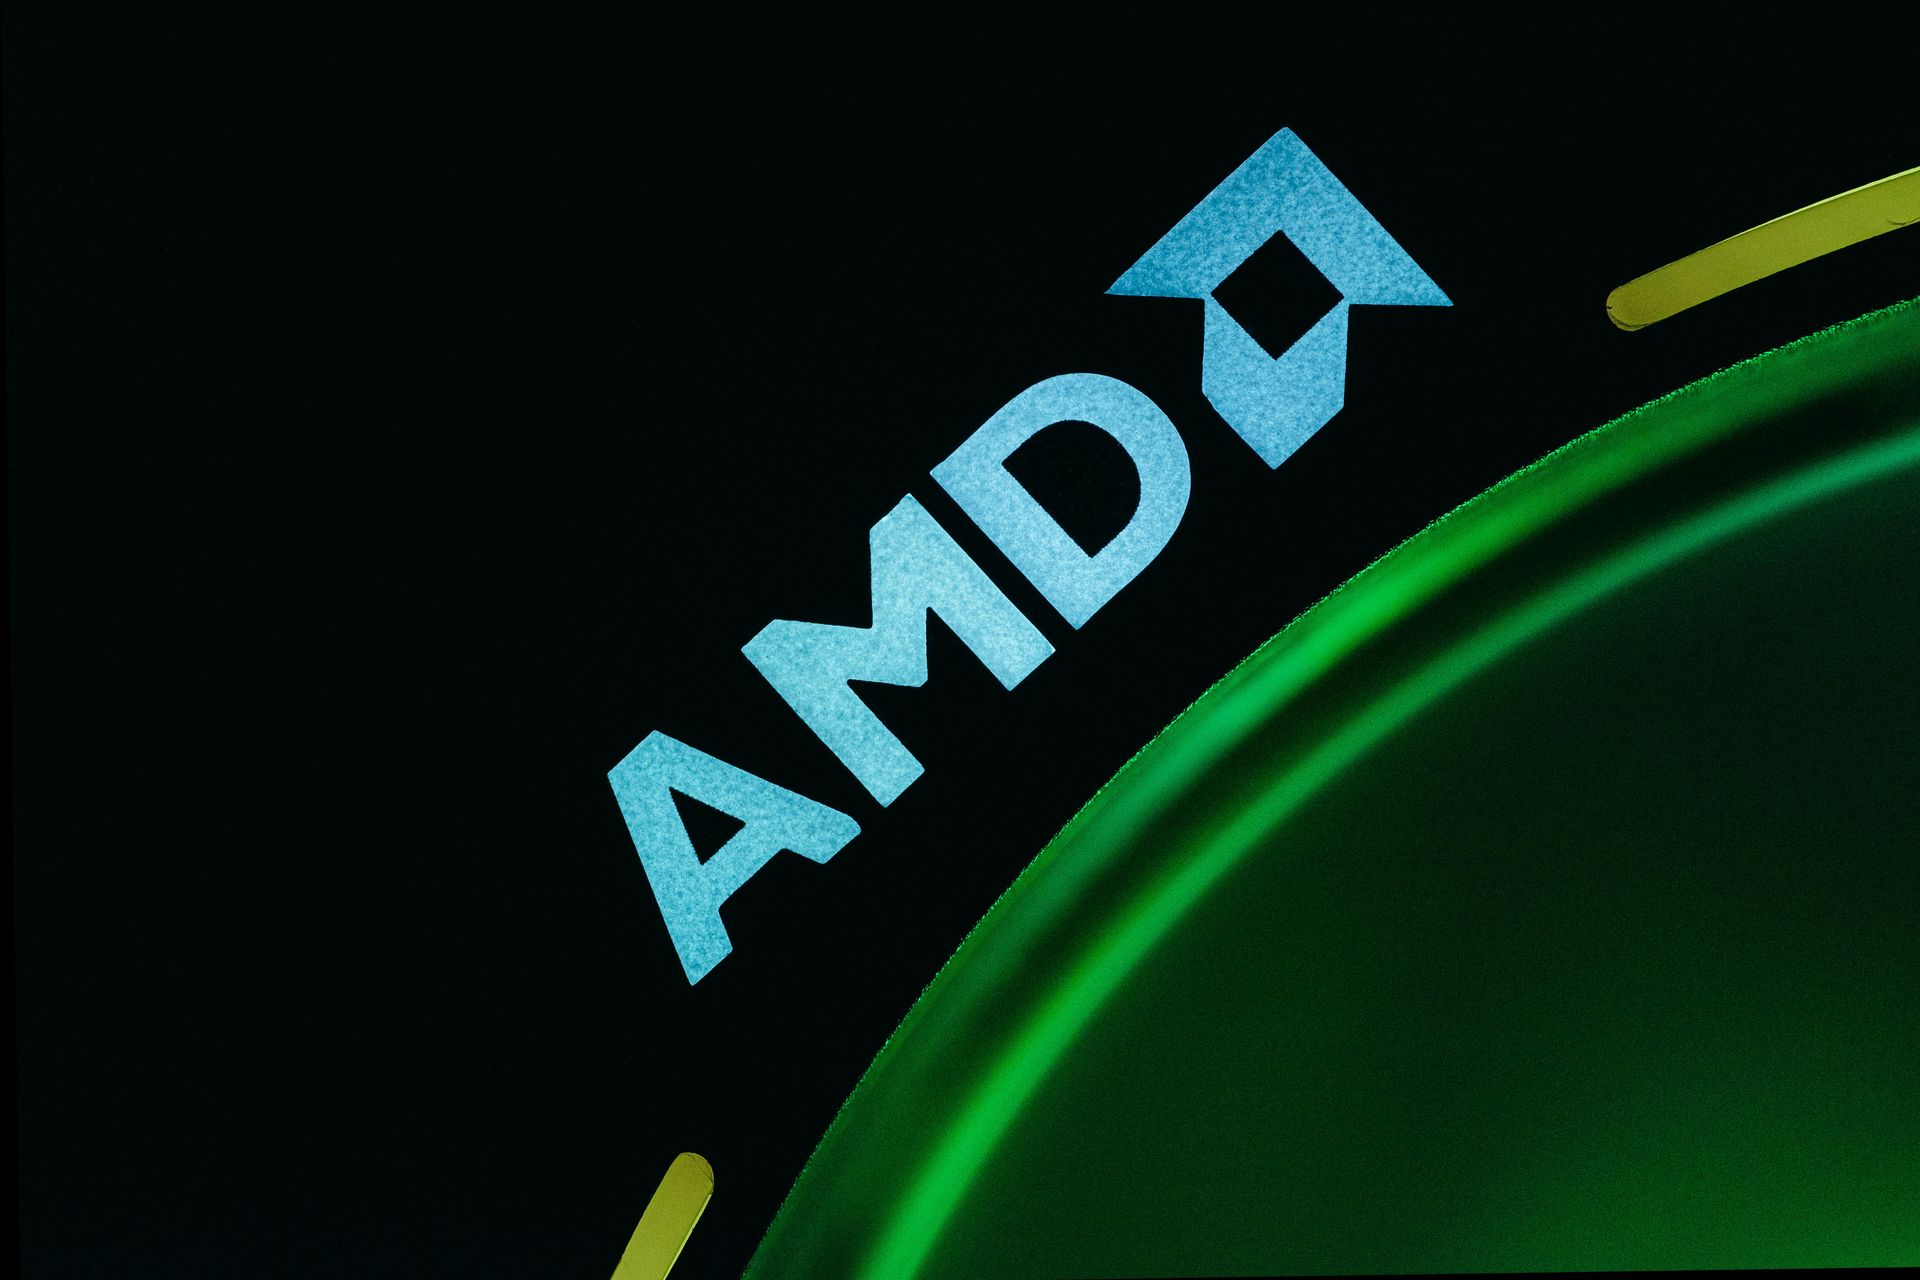 Windows et AMD : Un nouveau chapitre dans la compatibilité